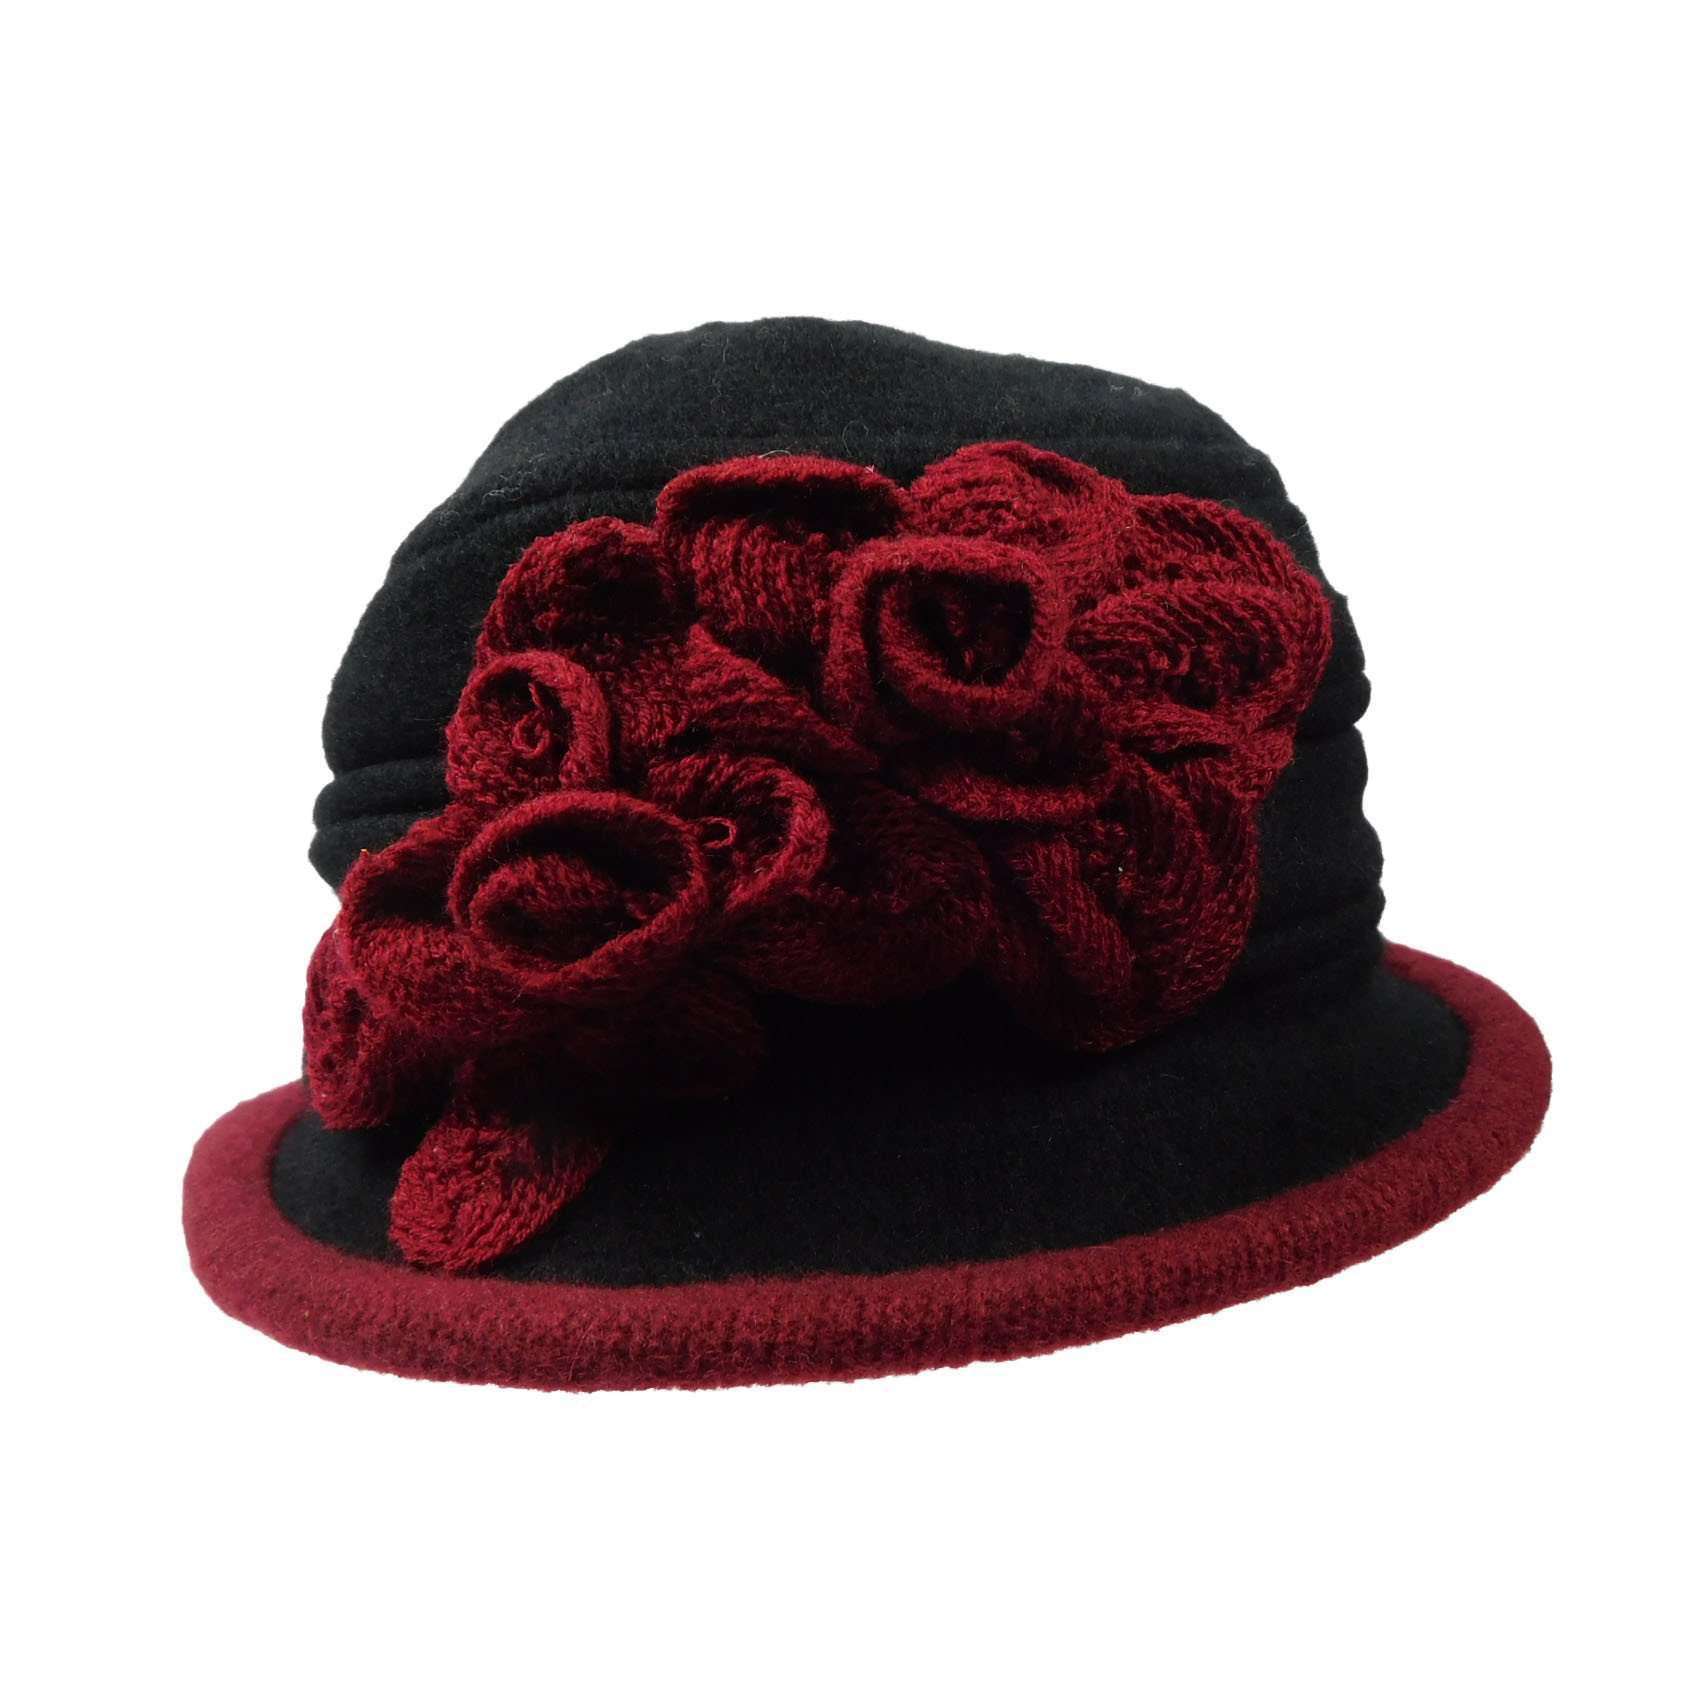 Wool Bucket Hat with Crochet Flower Beanie Jeanne Simmons js7140bk Black  